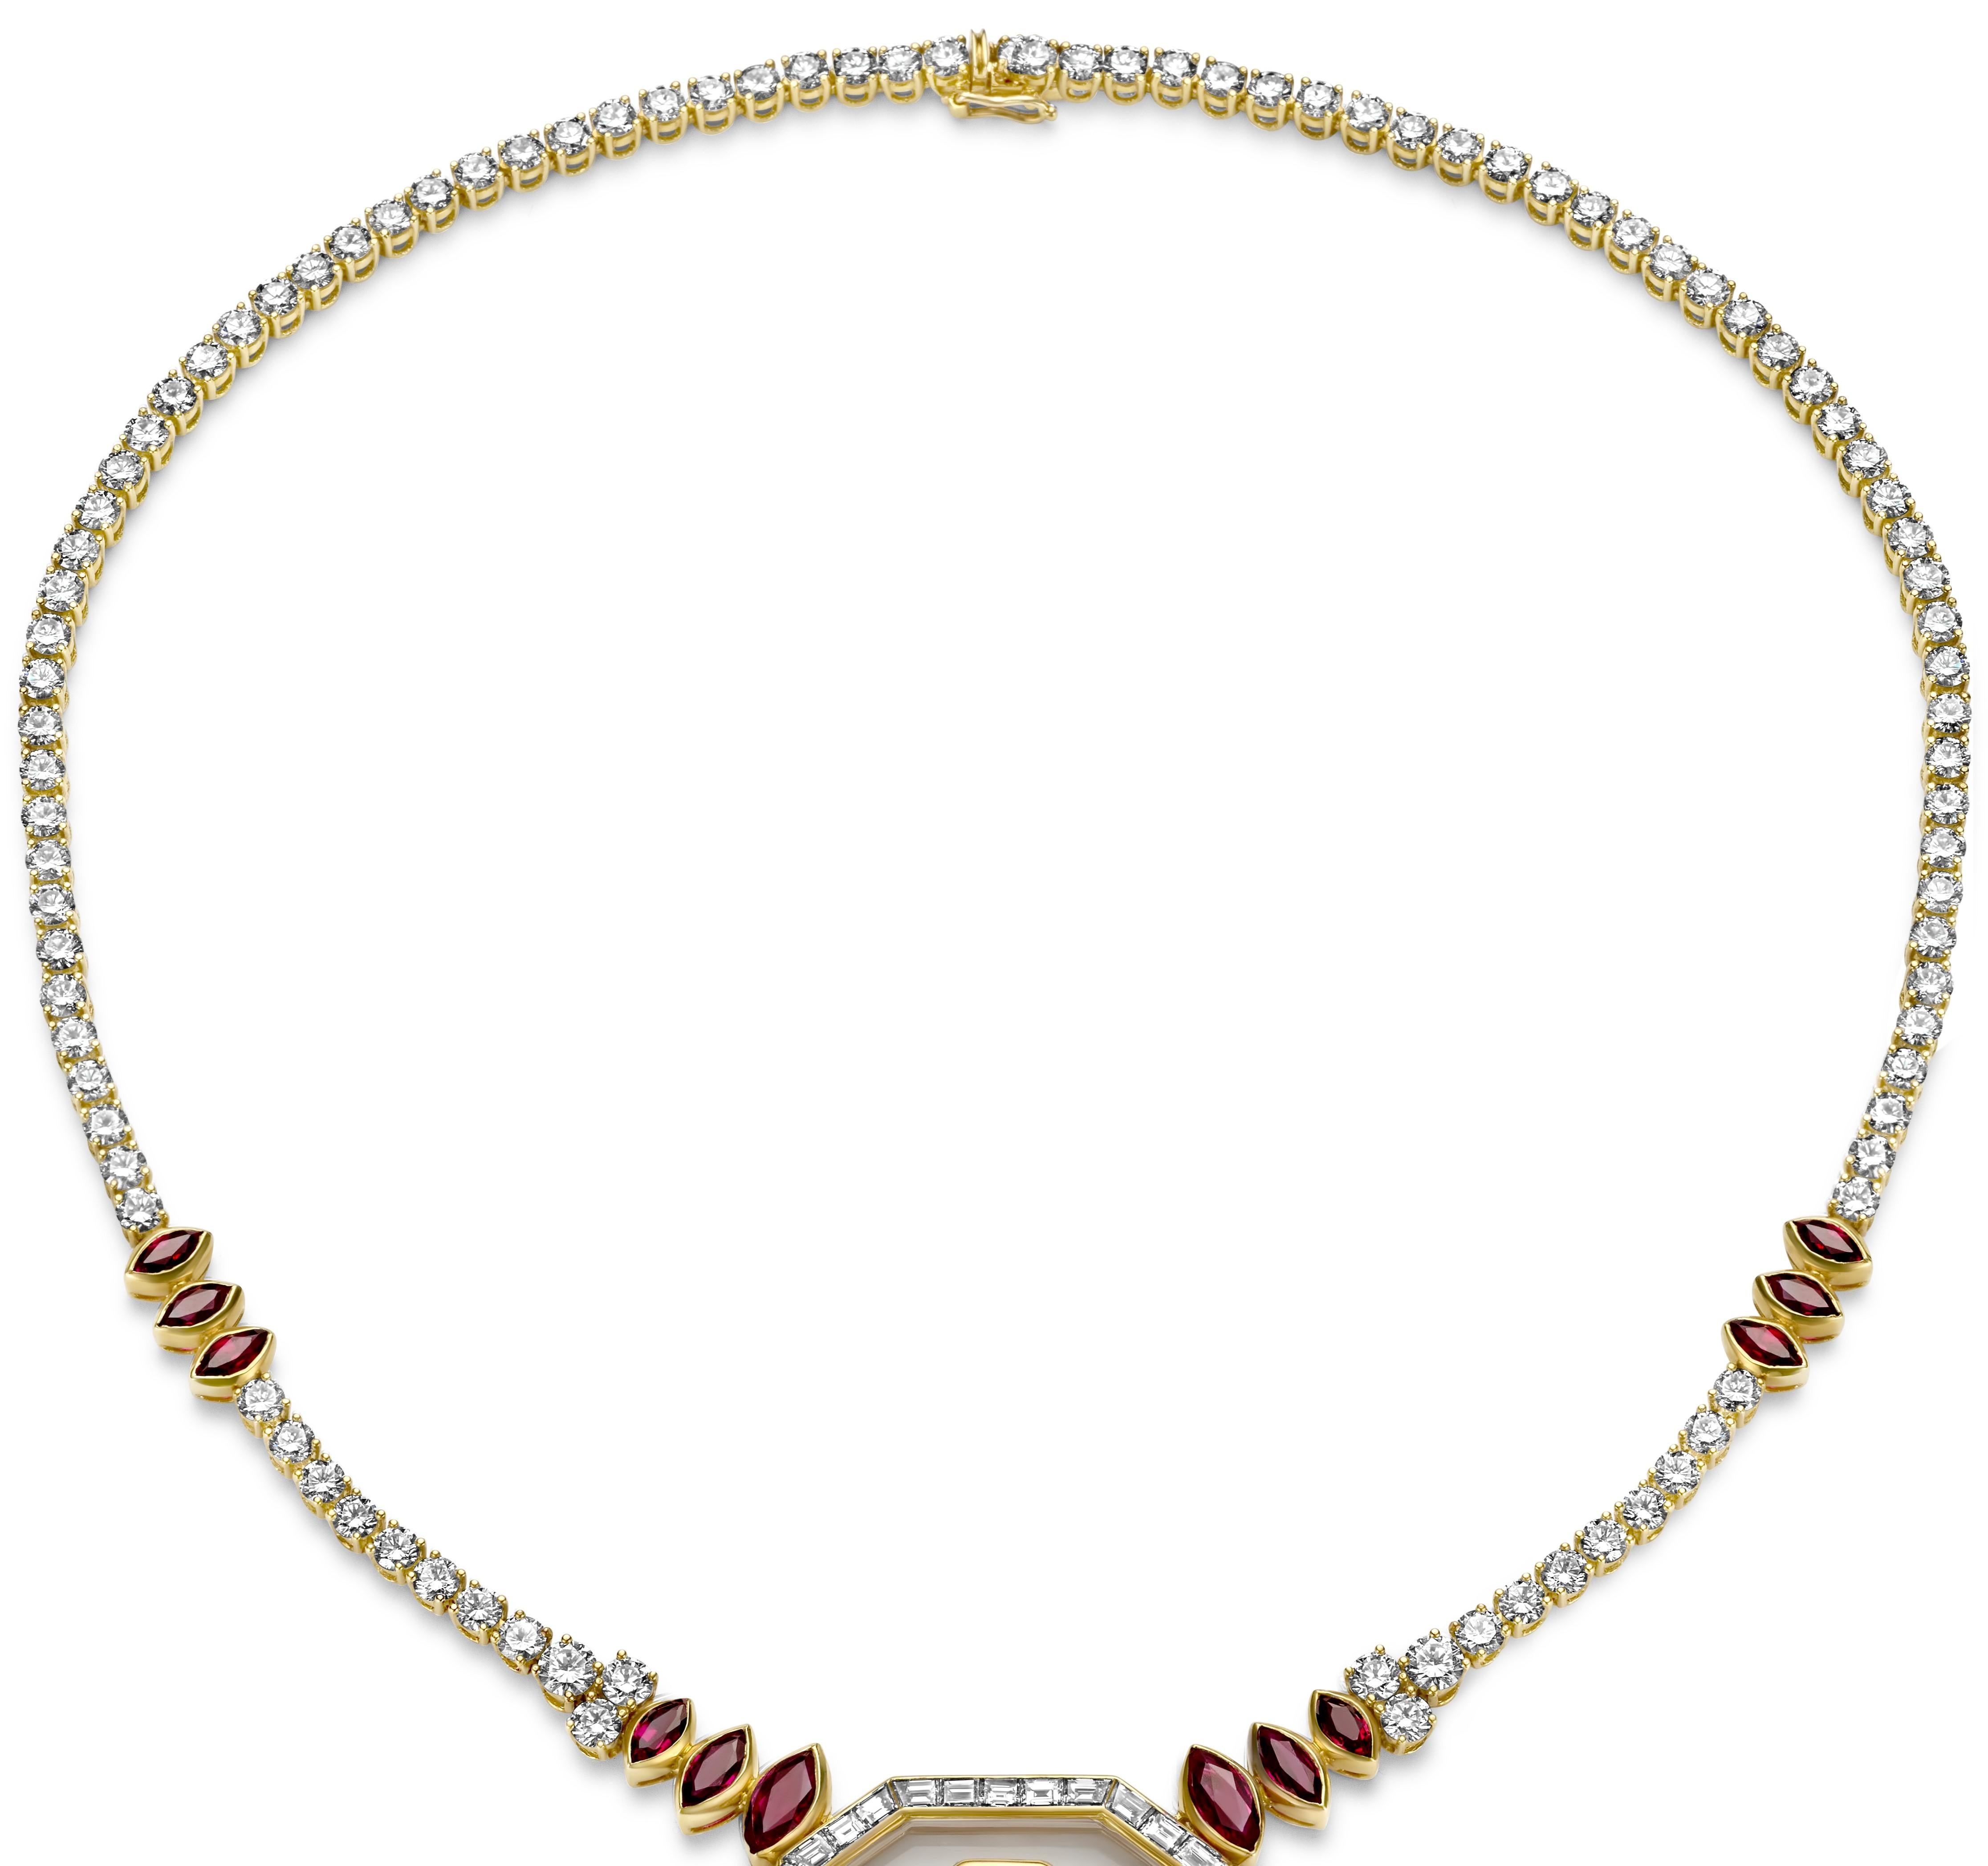 sultan necklace